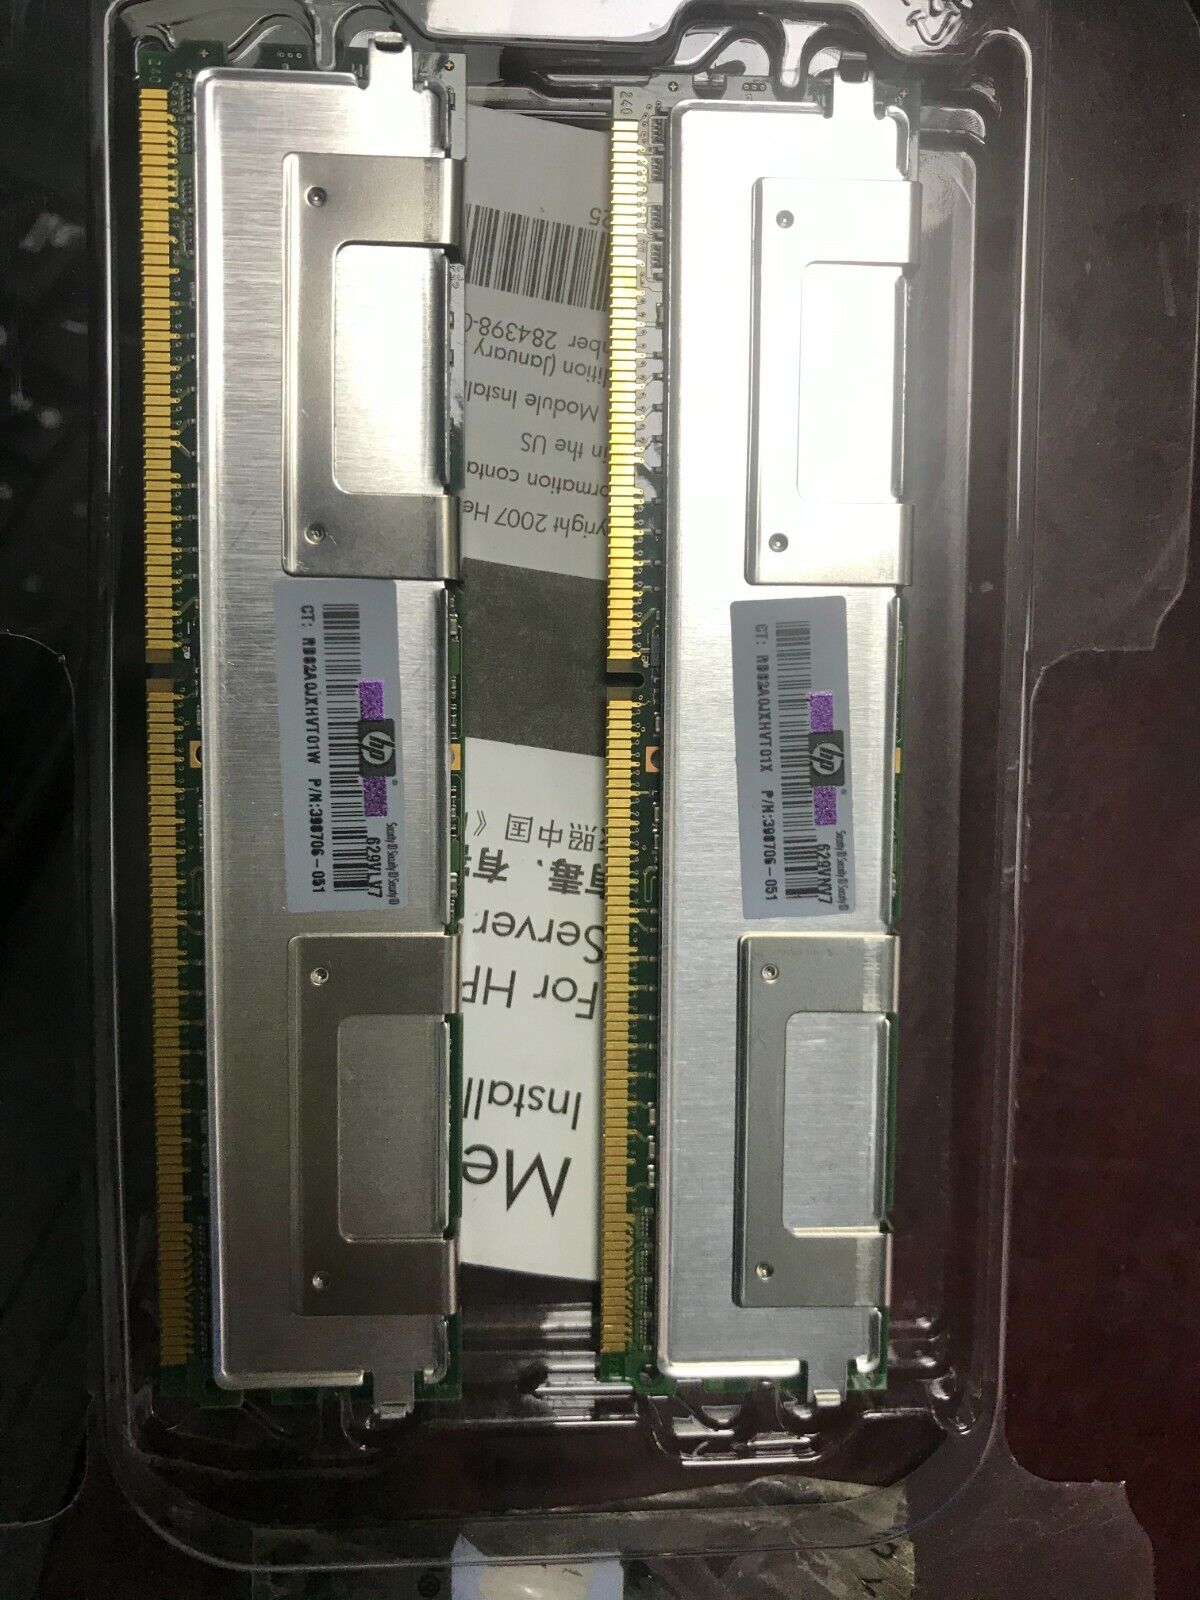 2 X 1GB HP Micron 398706-051 PC2-5300F 667MHz Registered DDR2 ECC Server RAM